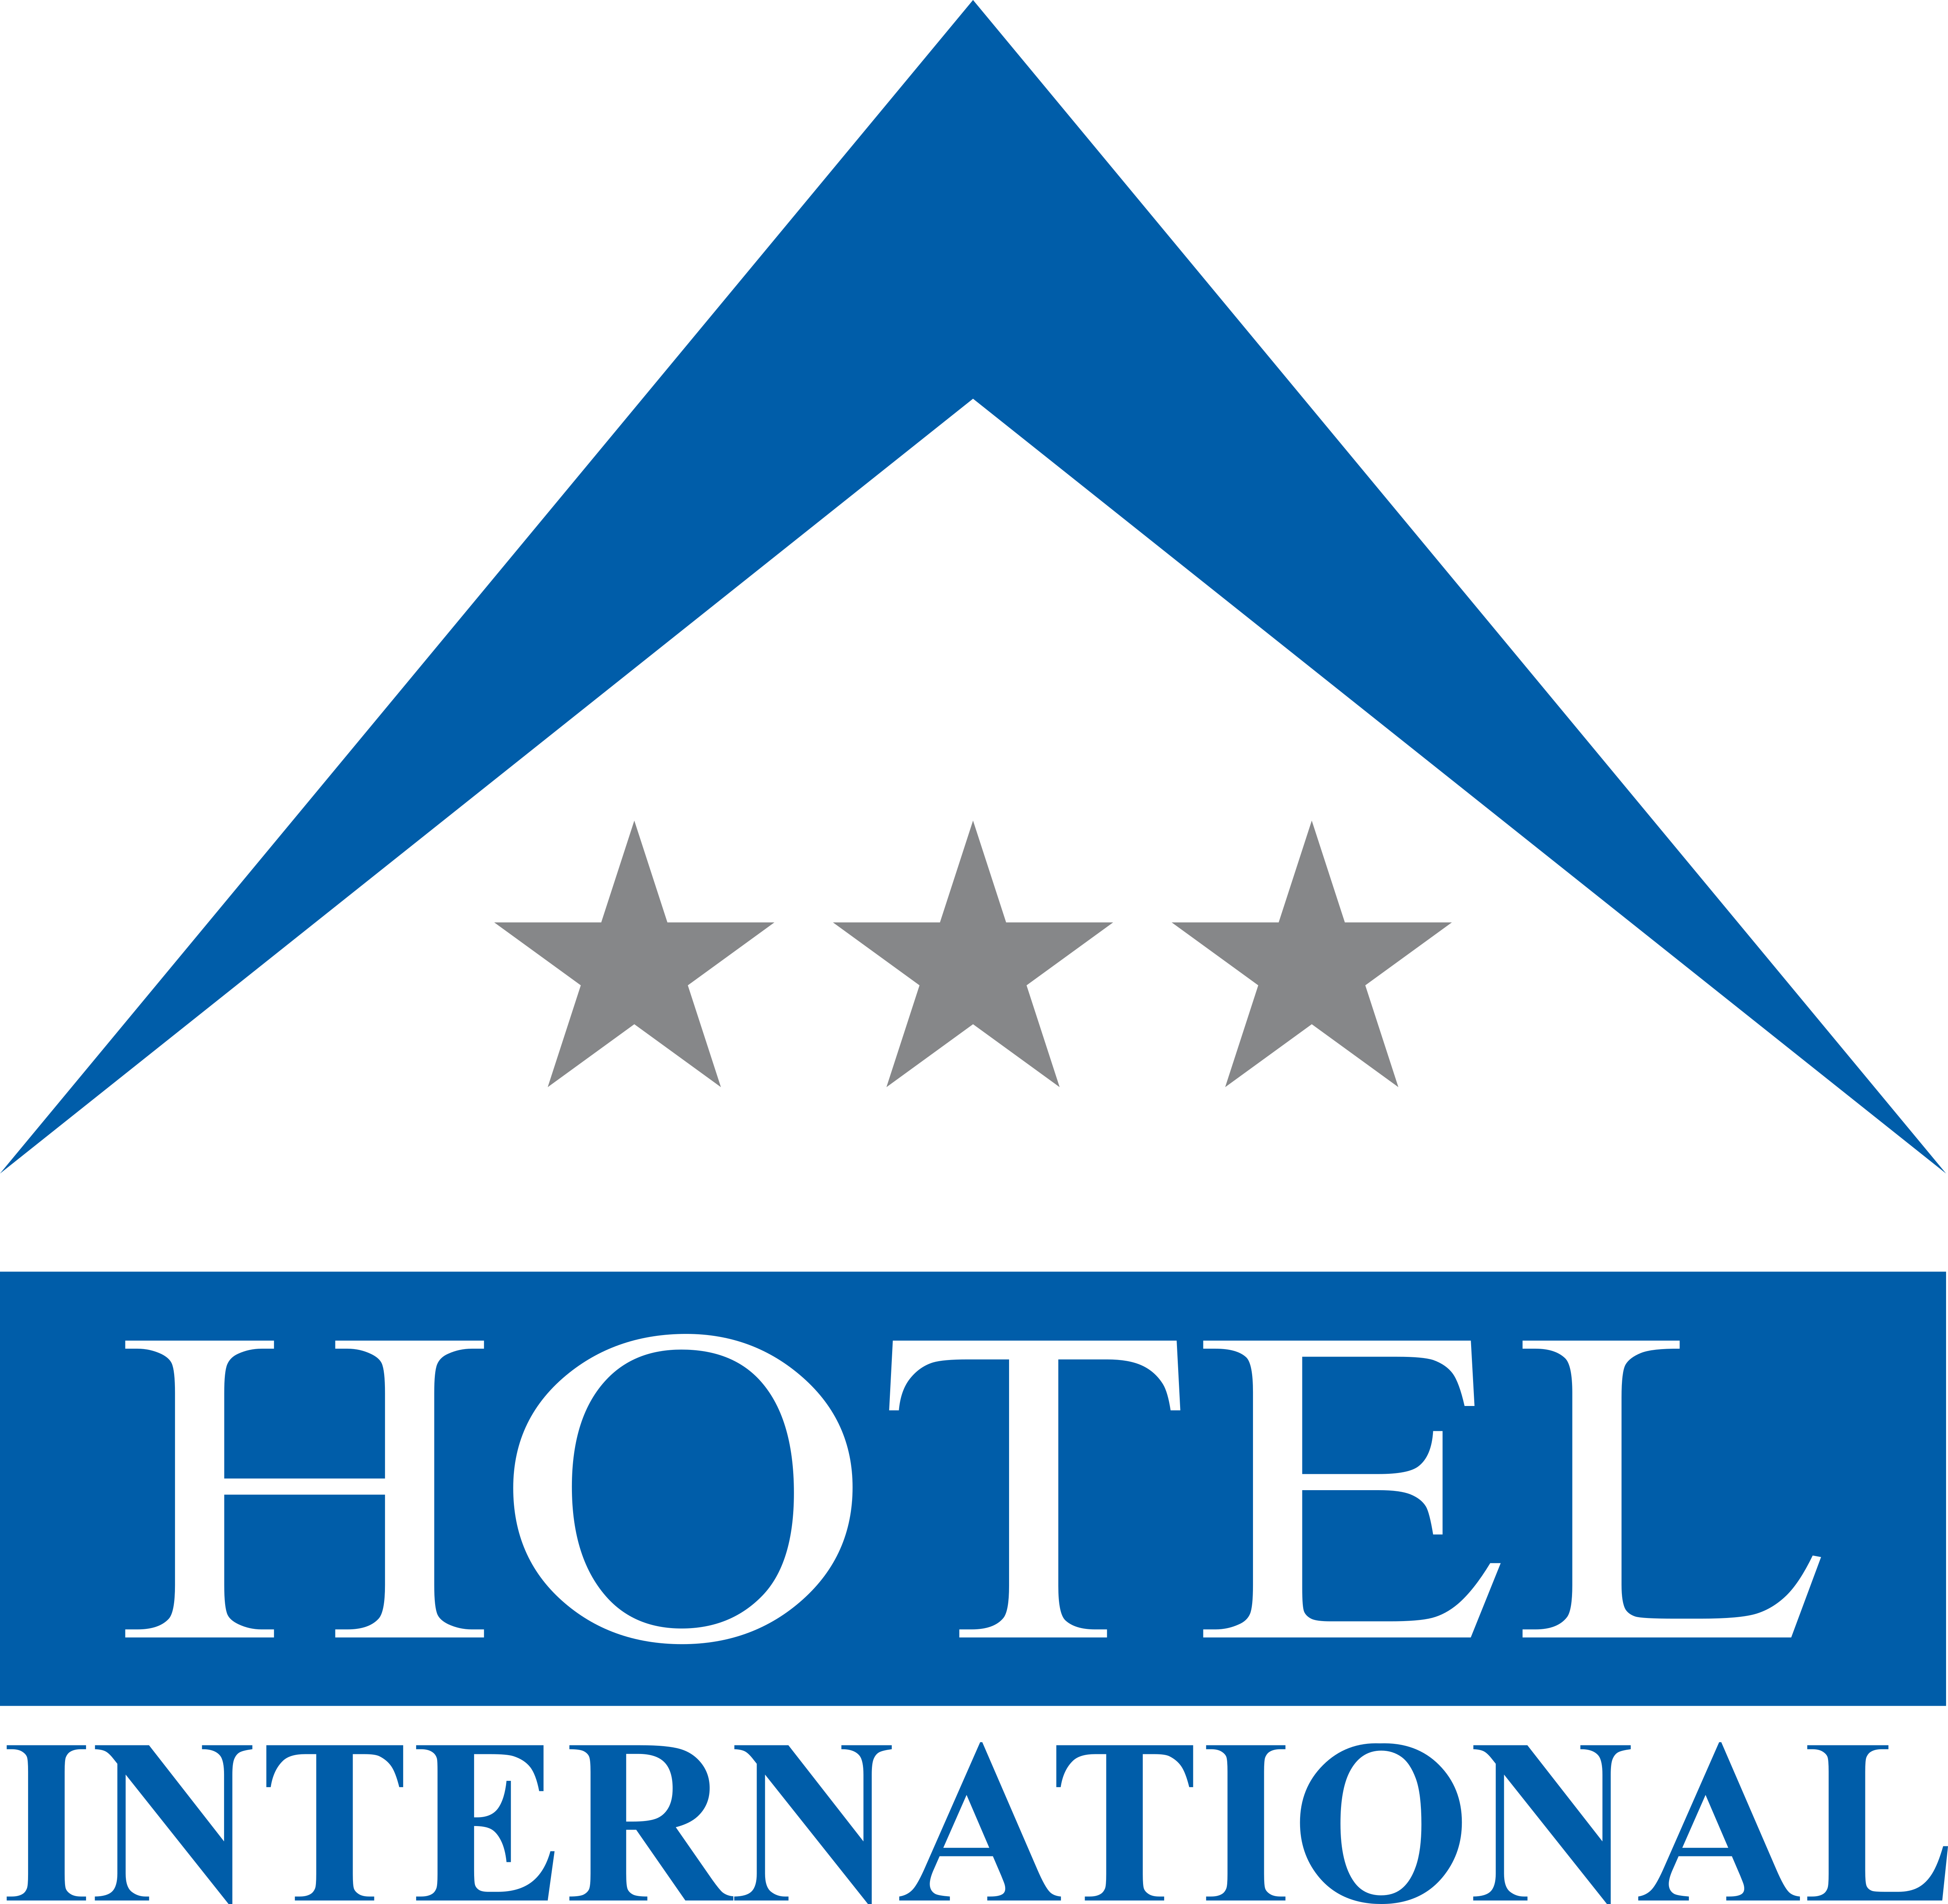  Hotel  International Sinaia Logos  Download